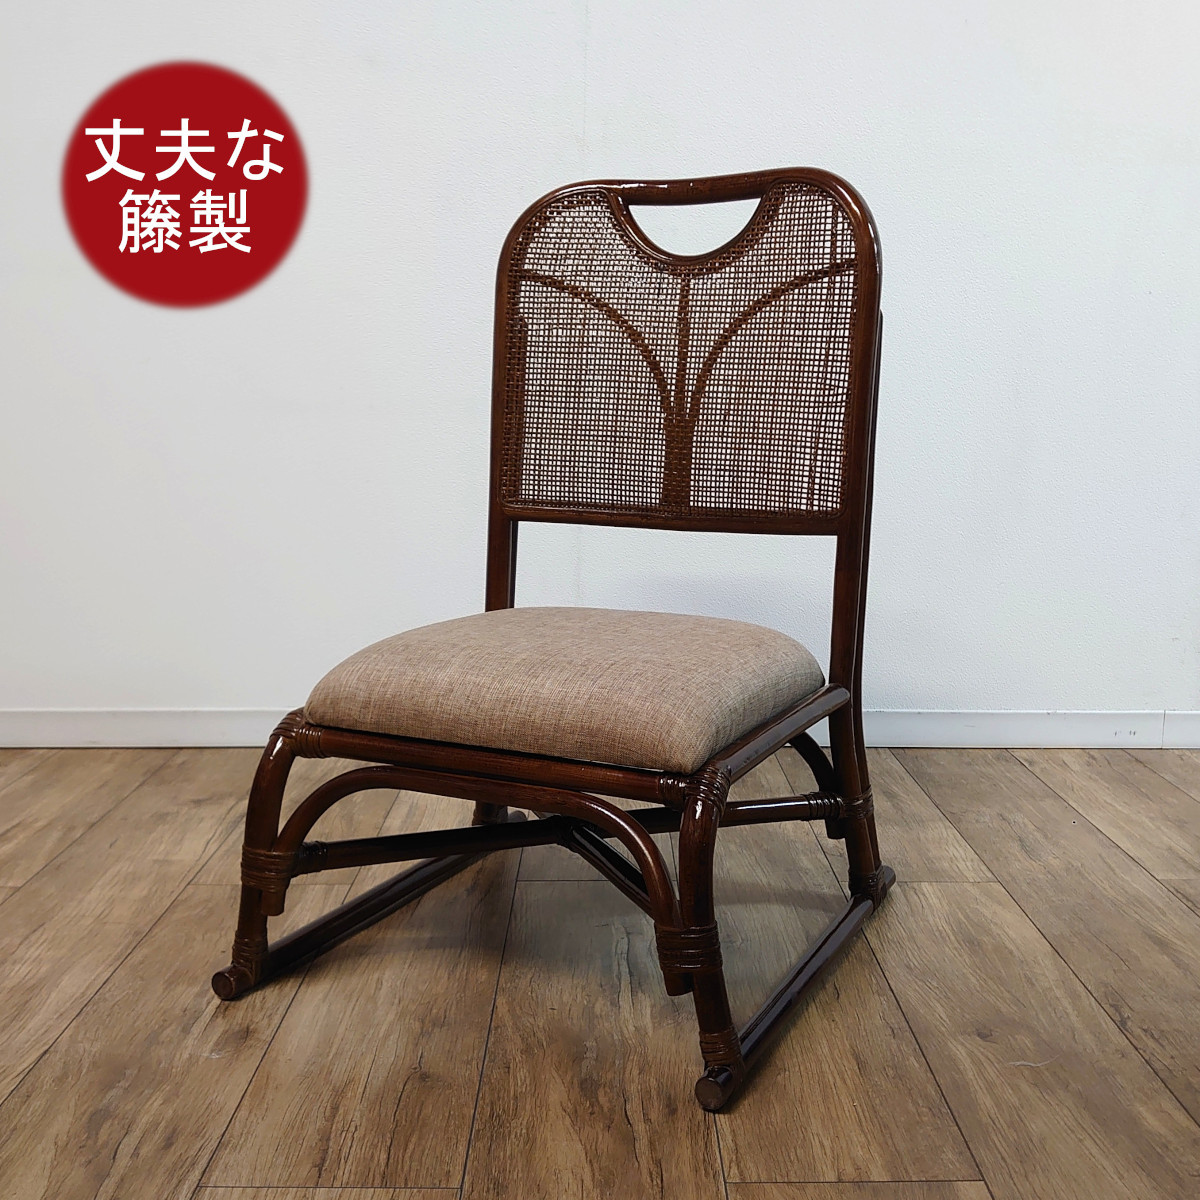 古典 ラタン 籐 スタッキングチェア IS-T-006 組立不要 軽量 法事 座椅子 アームレスチェア クッション無地 座椅子